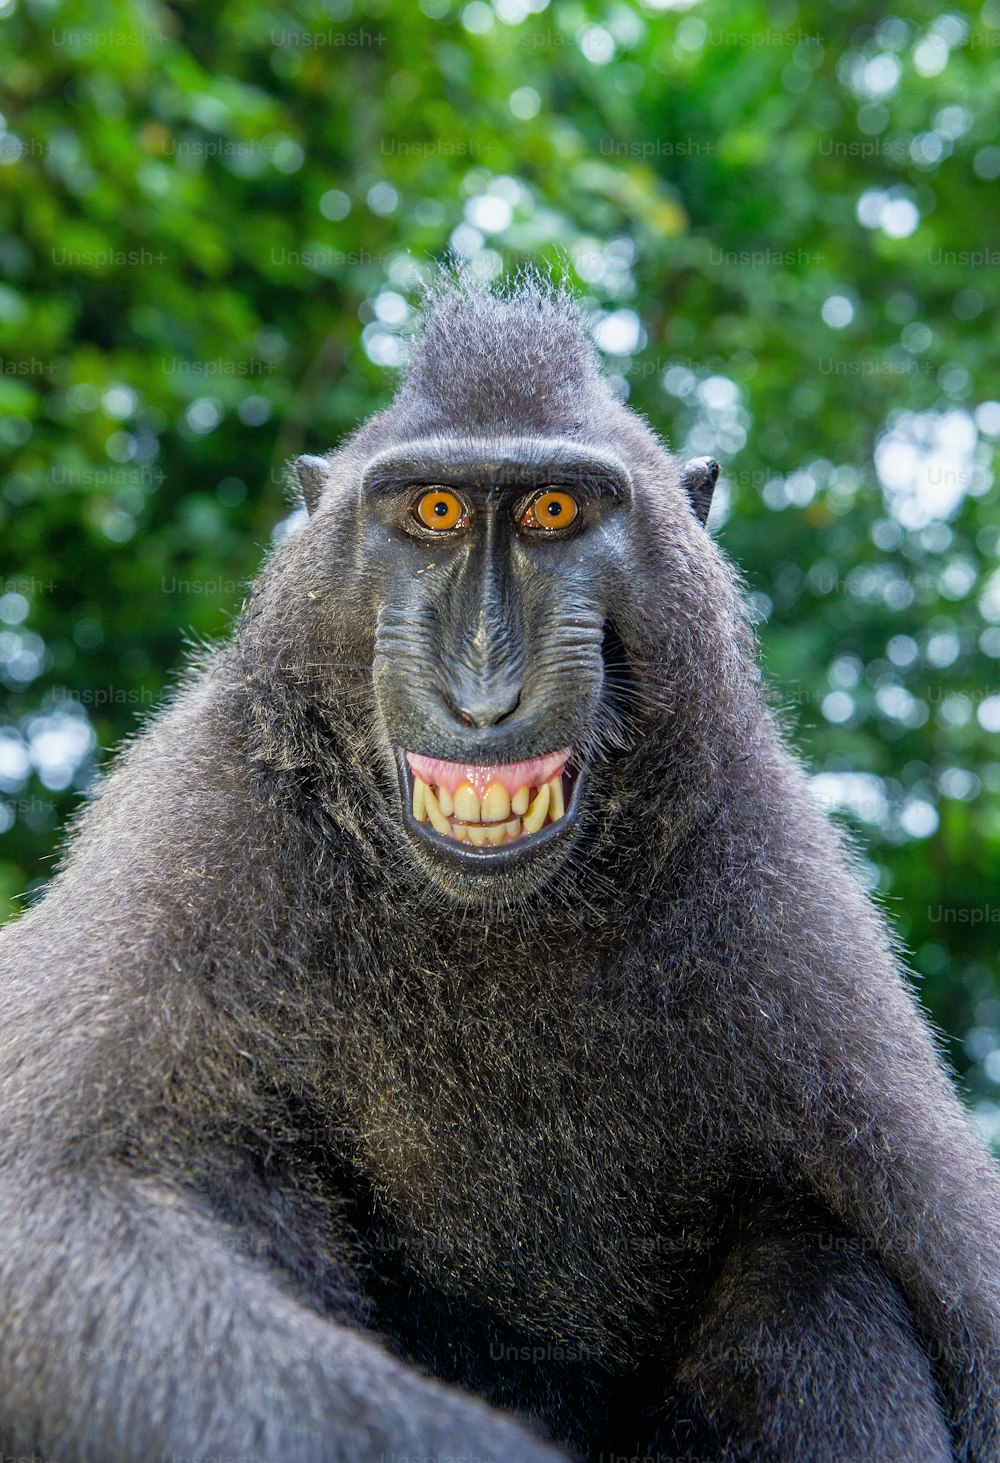 Macaco crestato di Celebes con la bocca aperta. Ritratto ravvicinato sullo sfondo naturale verde. Macaco nero crestato, macaco crestato di Sulawesi o scimmia nera. Habitat naturale. Isola di Sulawesi. Indonesia